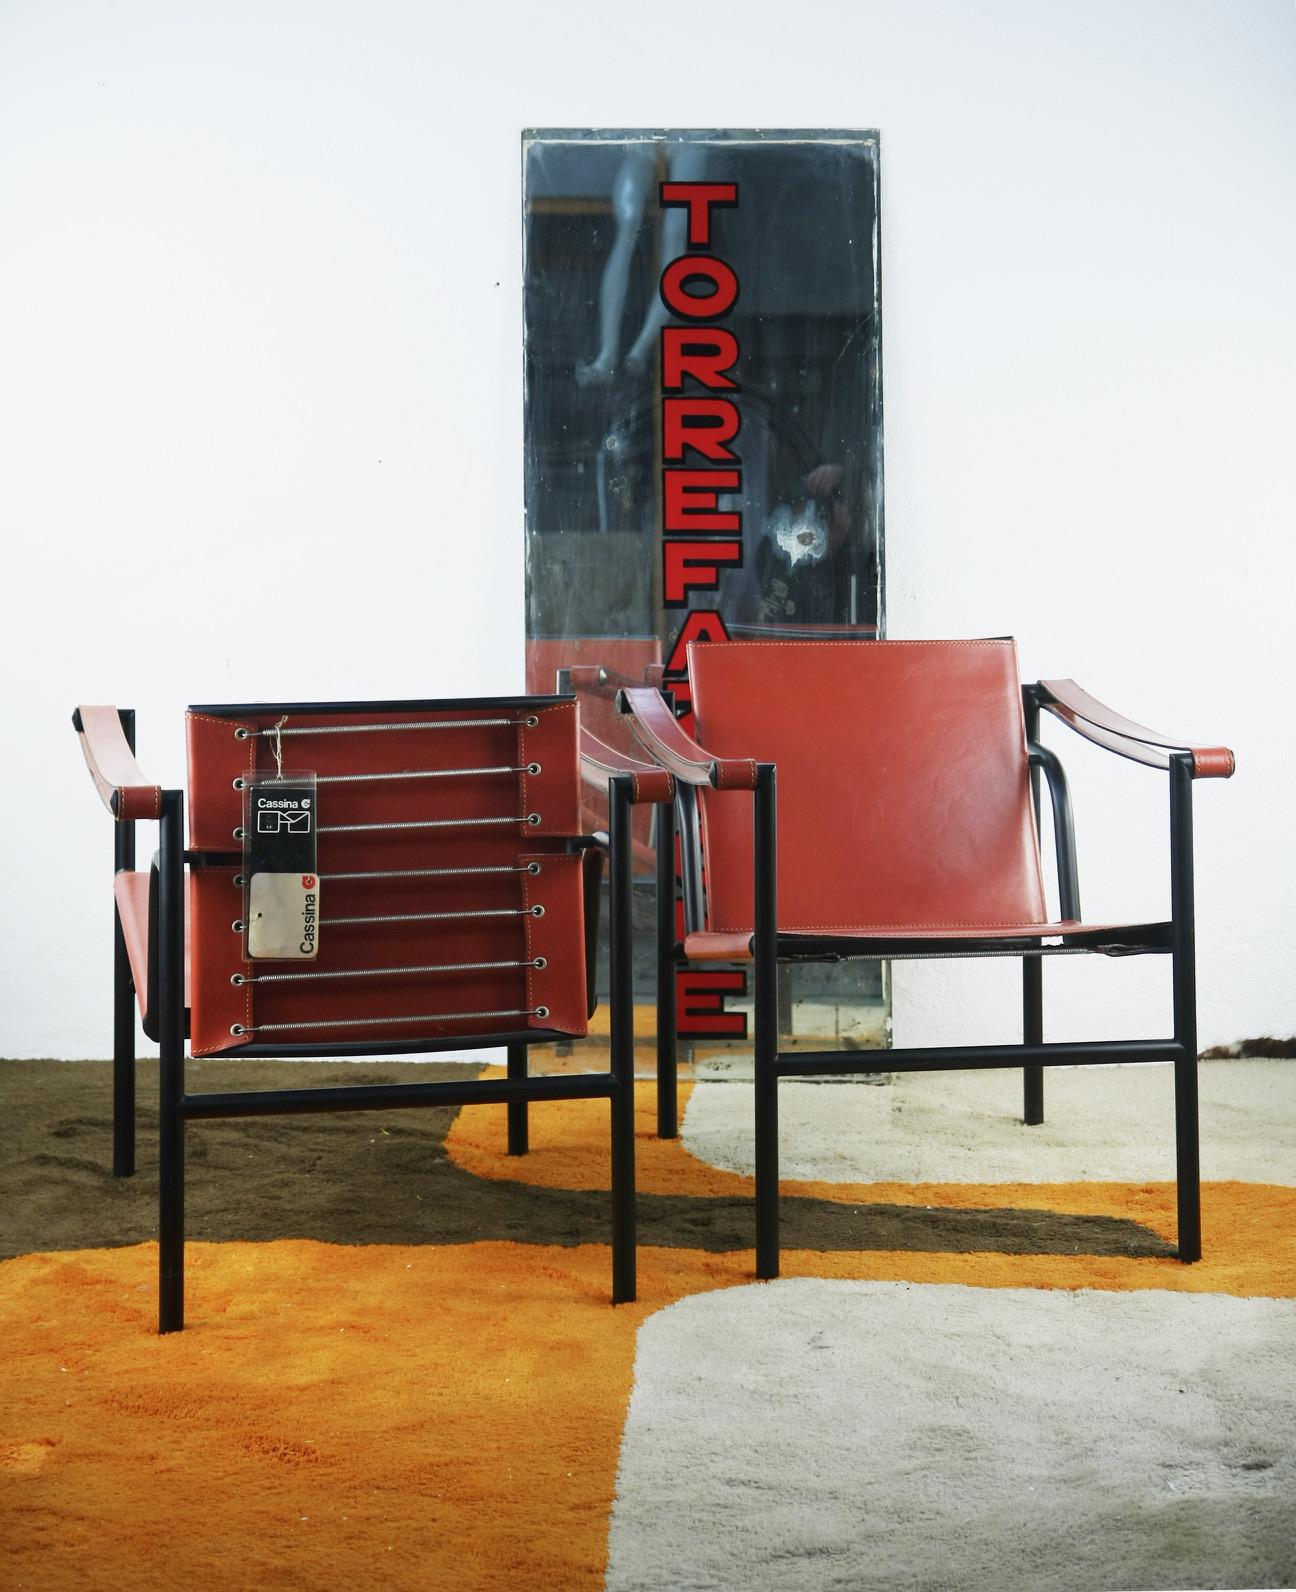 Découvrez le summum de l'élégance durable avec cette paire exemplaire de chaises LC1 de Le Corbusier, produite par le célèbre fabricant italien Cassina. Ces chaises sont un parfait exemple du design emblématique des années 1980, apparaissant comme